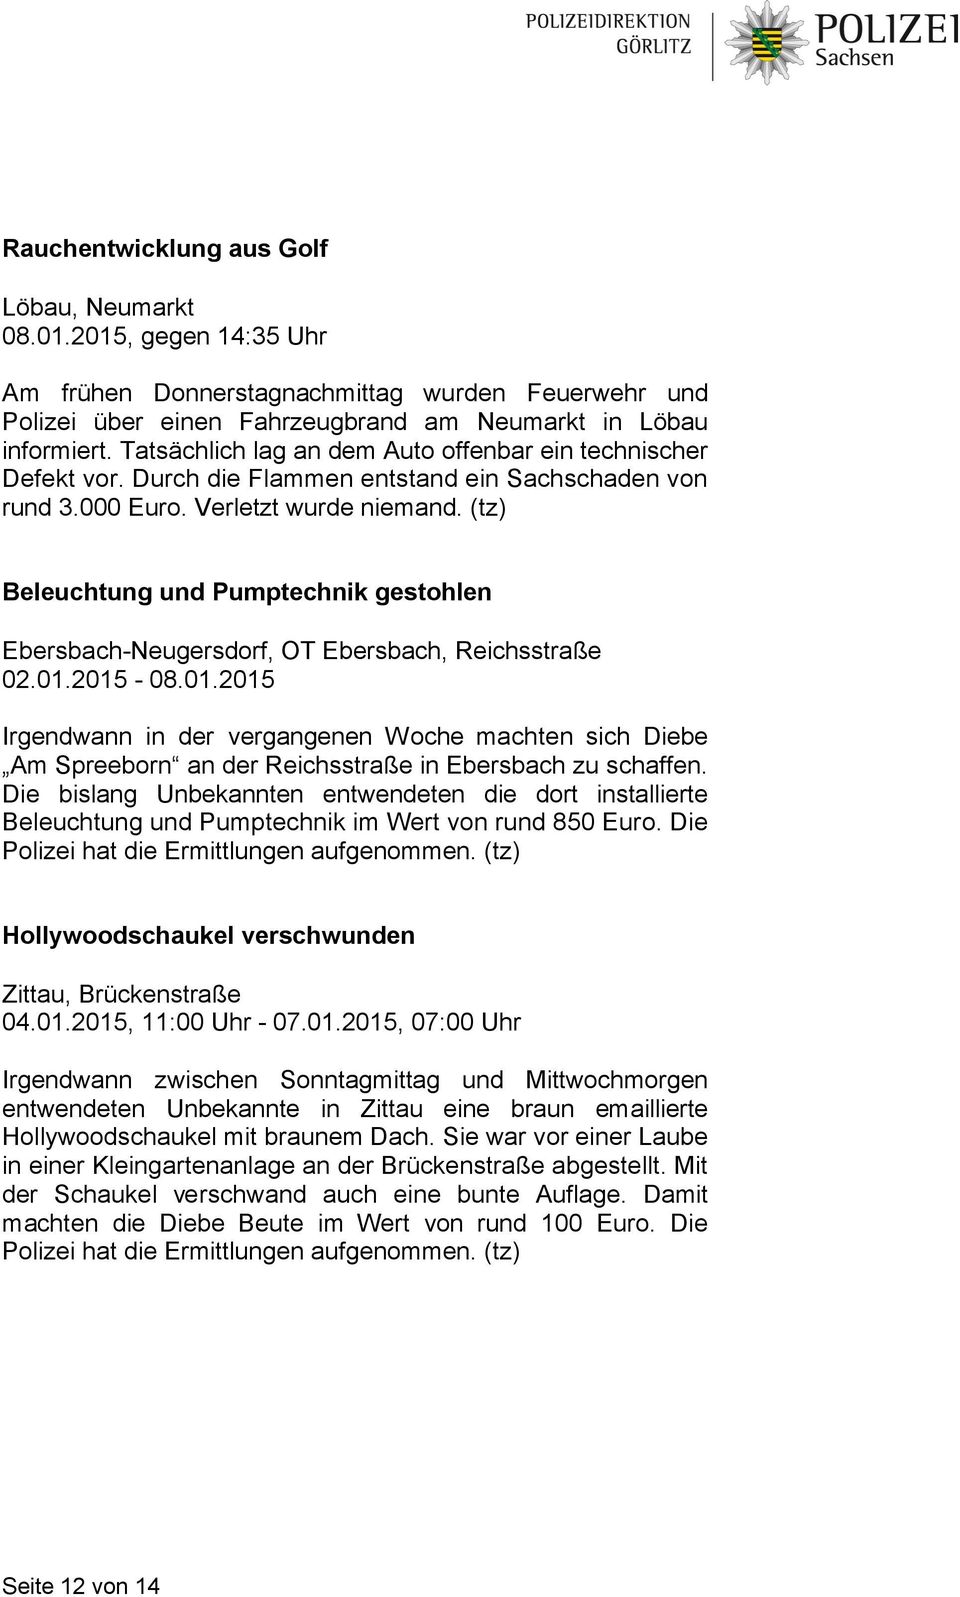 (tz) Beleuchtung und Pumptechnik gestohlen Ebersbach-Neugersdorf, OT Ebersbach, Reichsstraße 02.01.